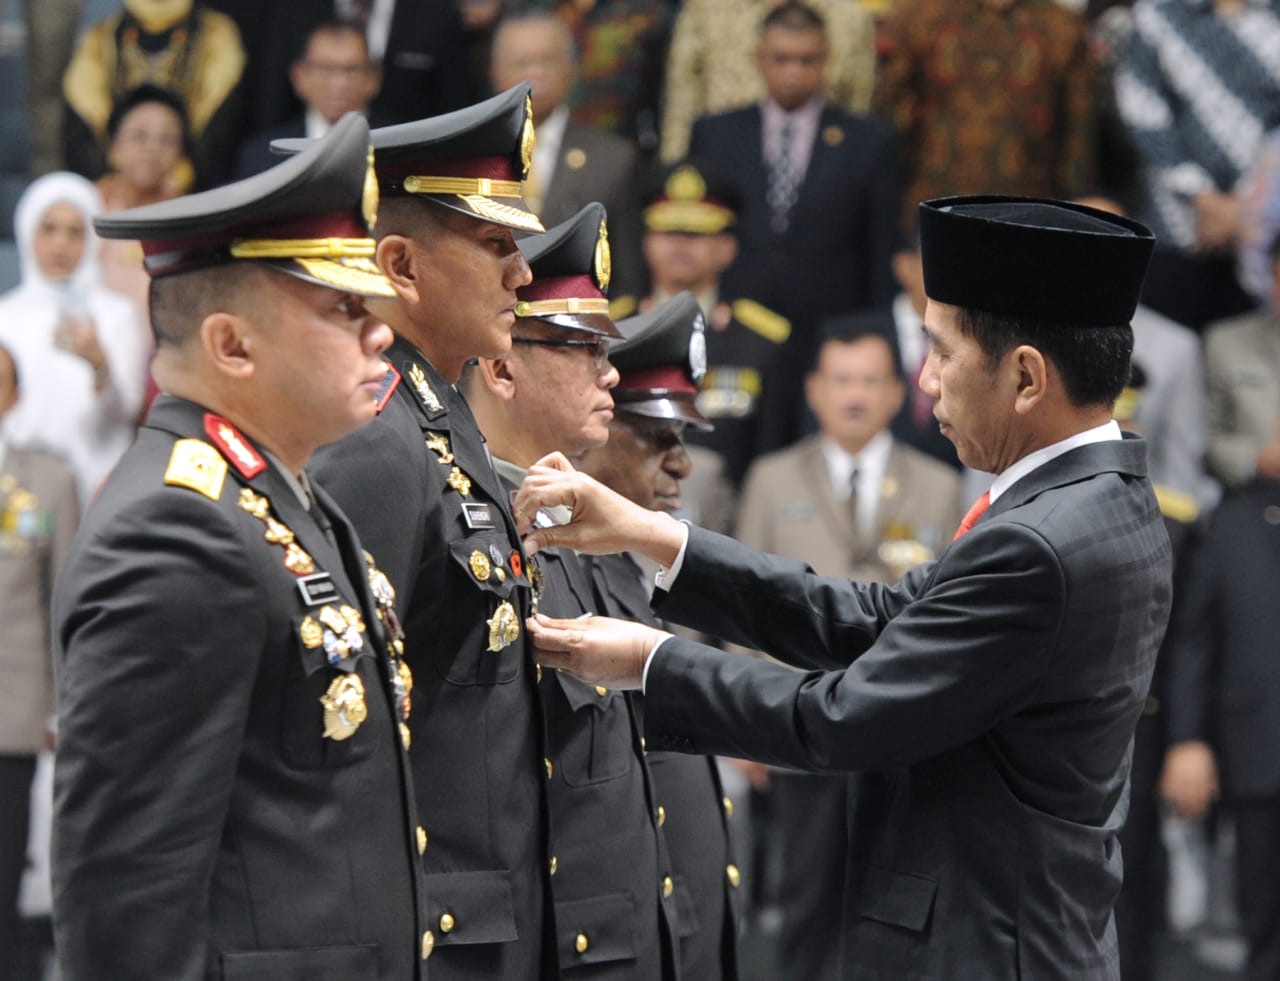 Presiden Joko Widodo saat menyematkan penghargaan Bintang Bhayangkara kepada anggota kepolisian. (Foto: Divisi Pers Presiden)